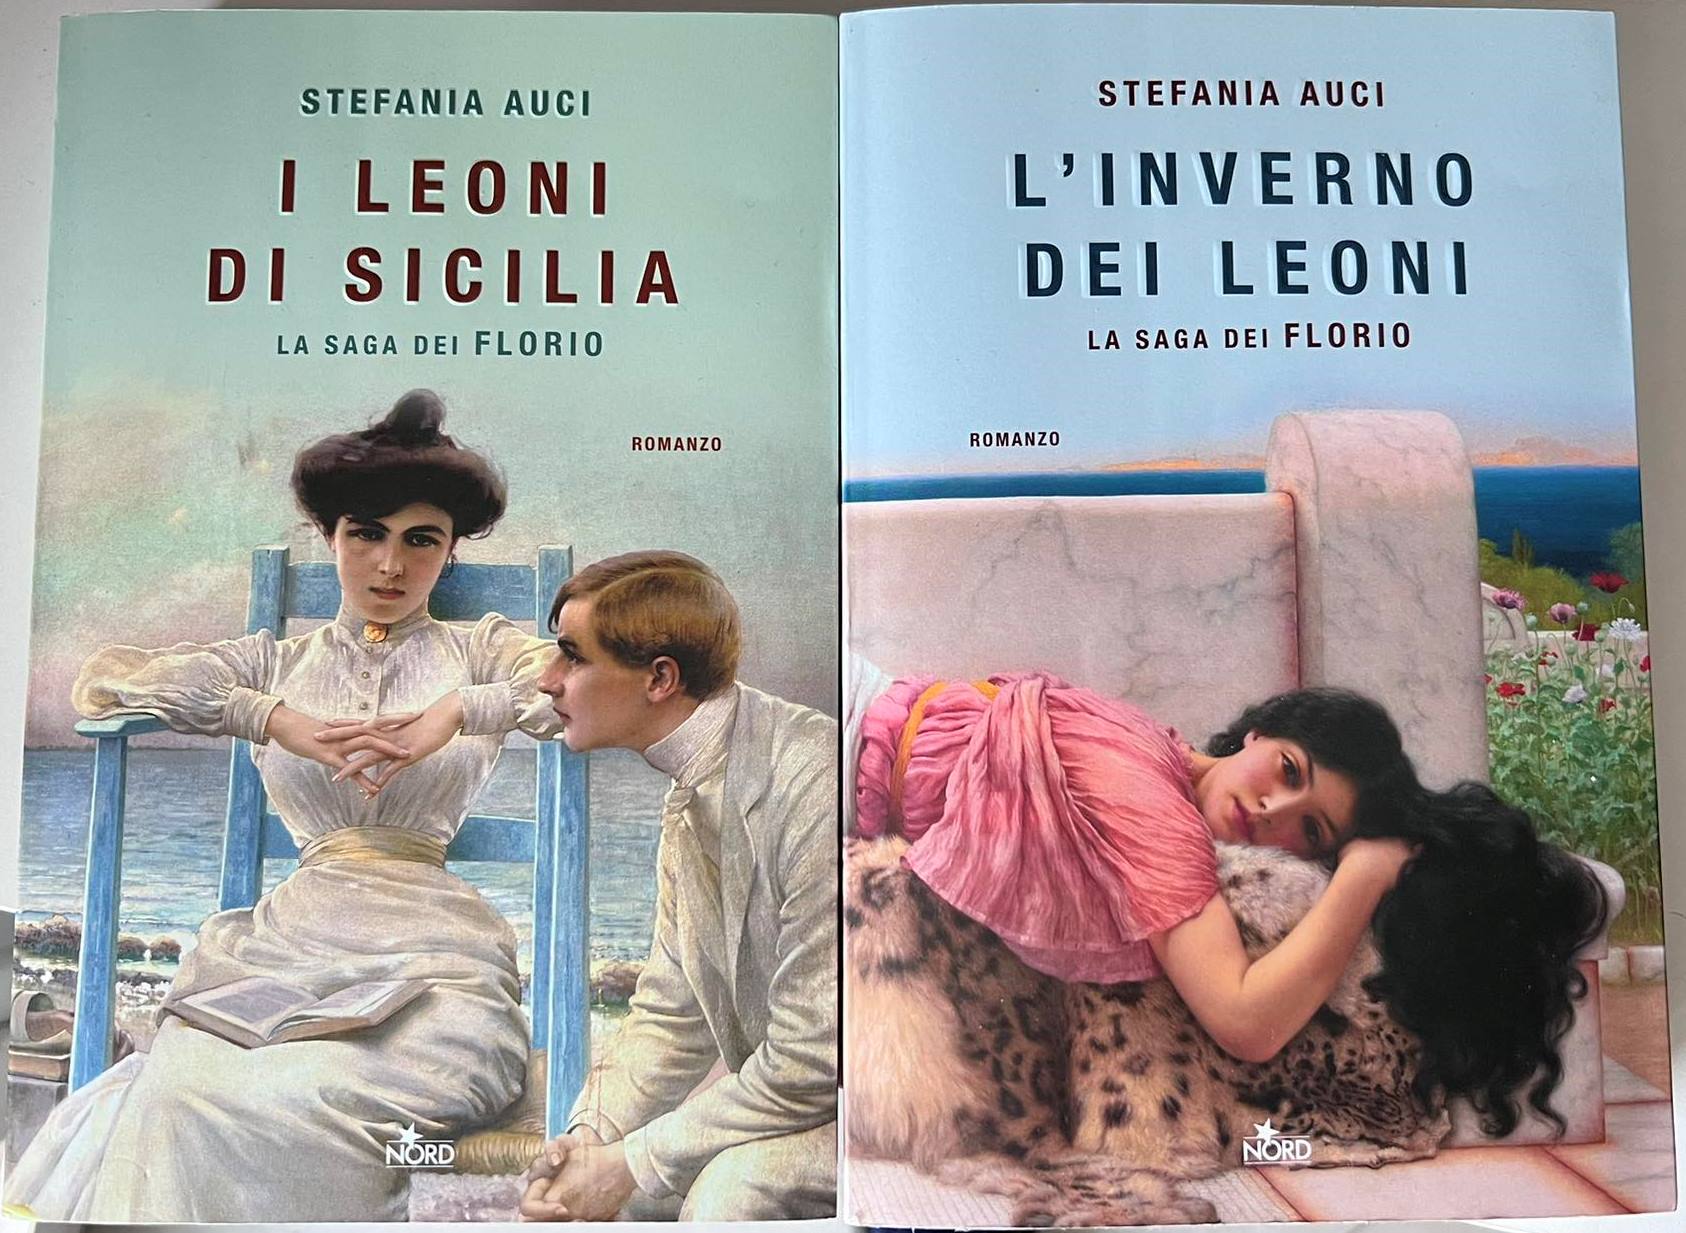 I Leoni di Sicilia oltre la serie TV: i libri di Stefania Auci sui